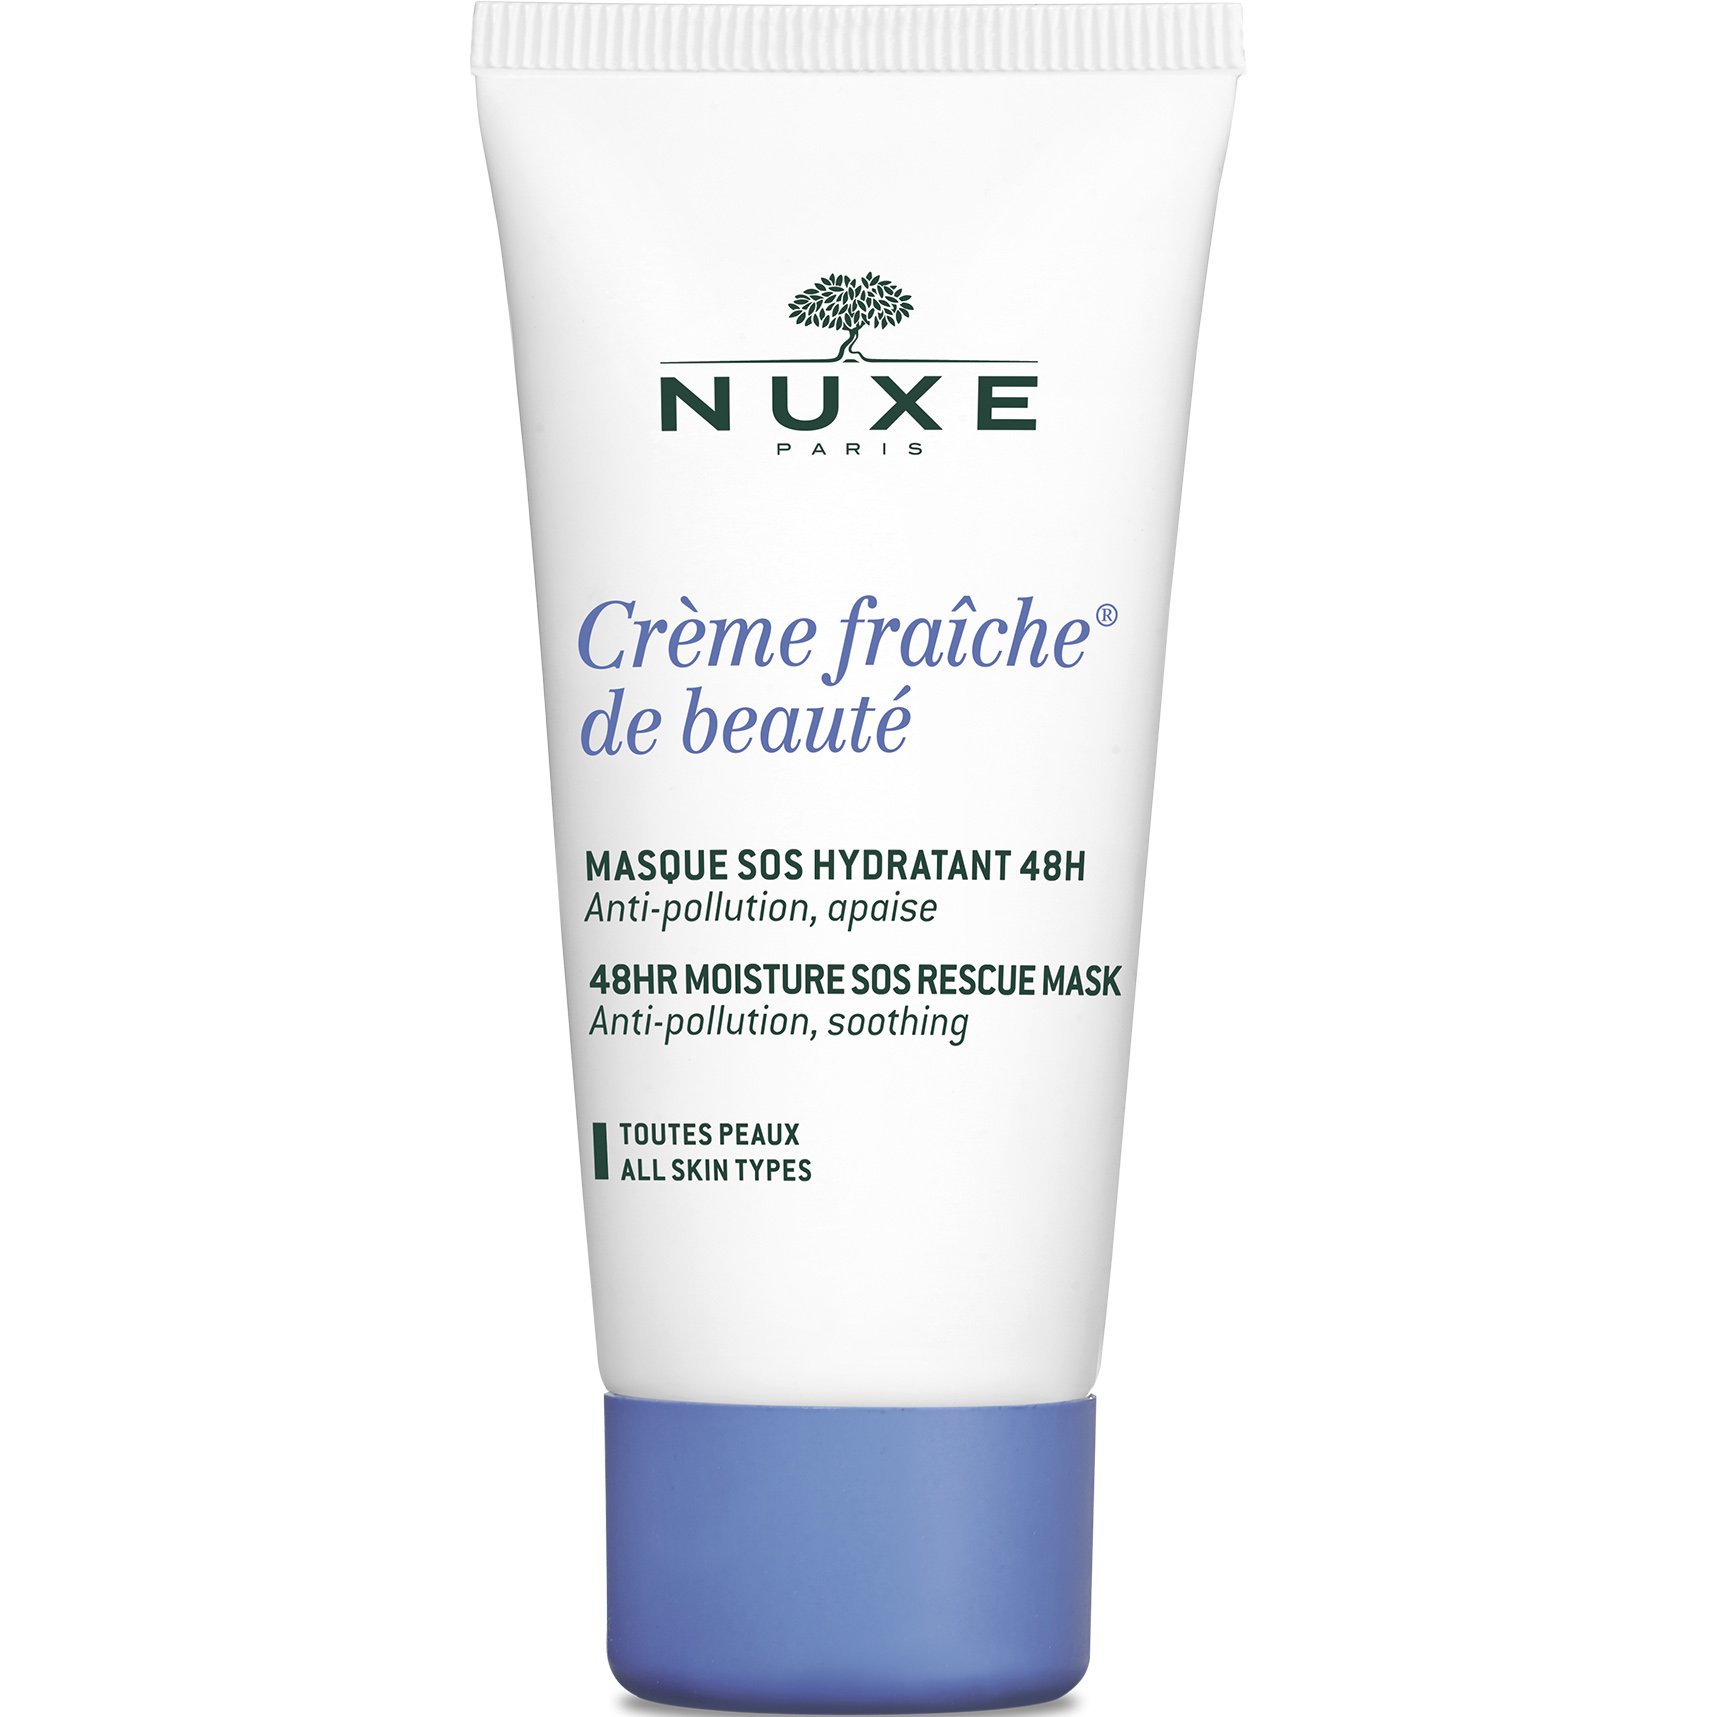 Nuxe Creme Fraiche de Beaute Masque SOS Μάσκα 48ωρης Ενυδάτωσης για Όλους τους Τύπους Δέρματος 50ml